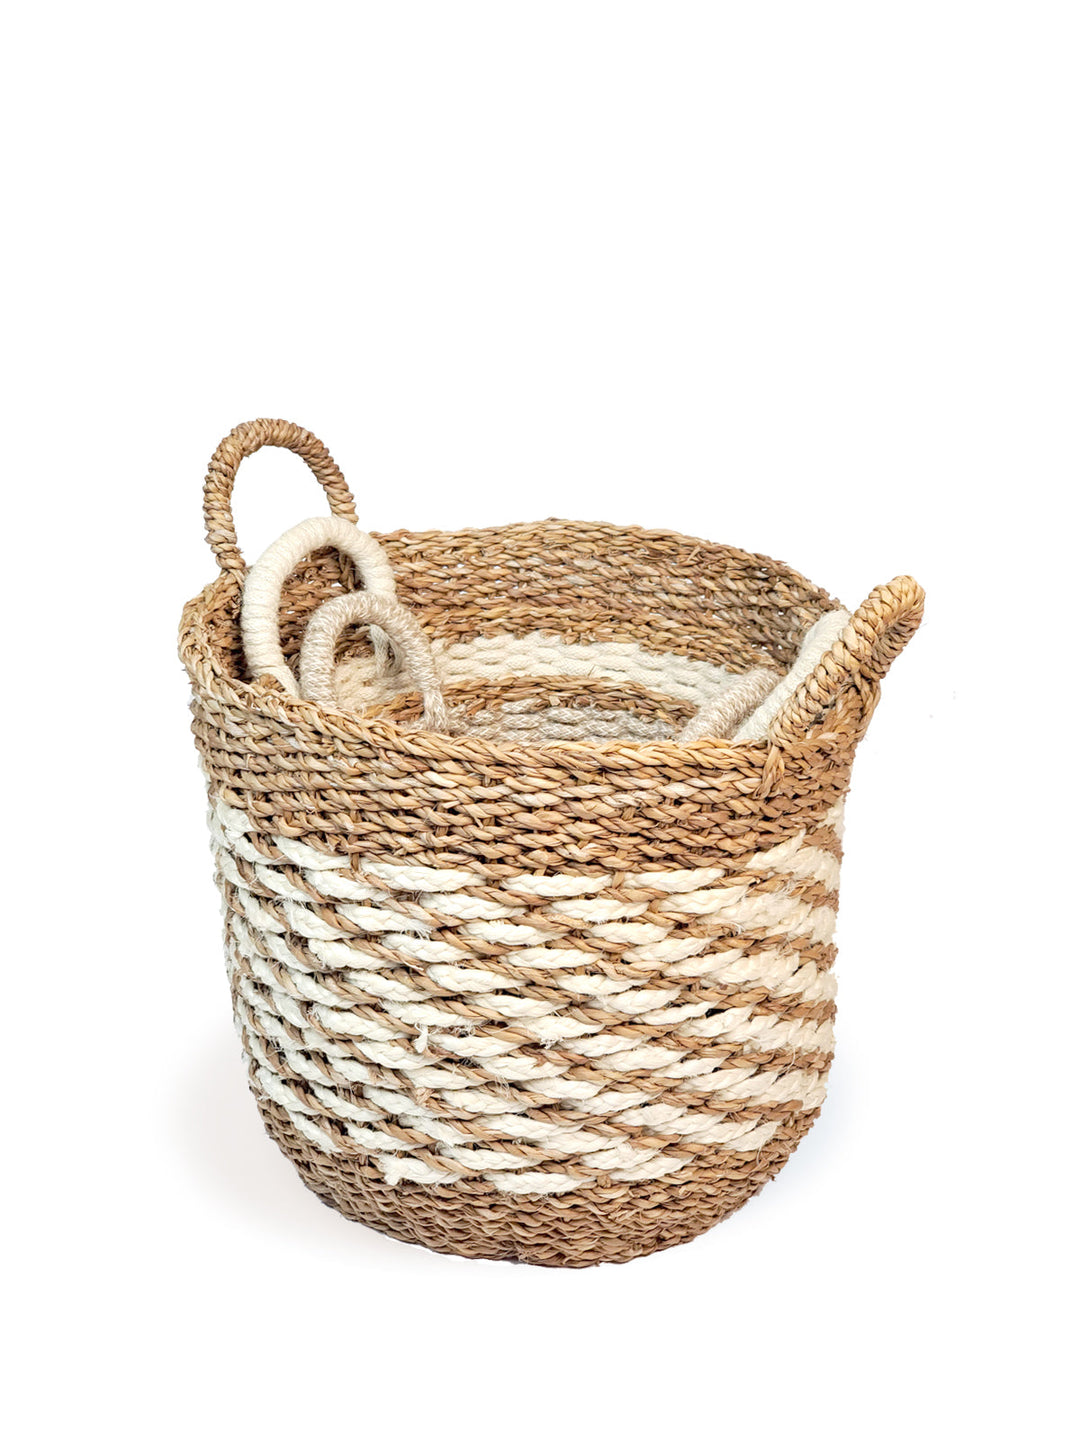 Ula Mesh Basket - Natural Hand Made